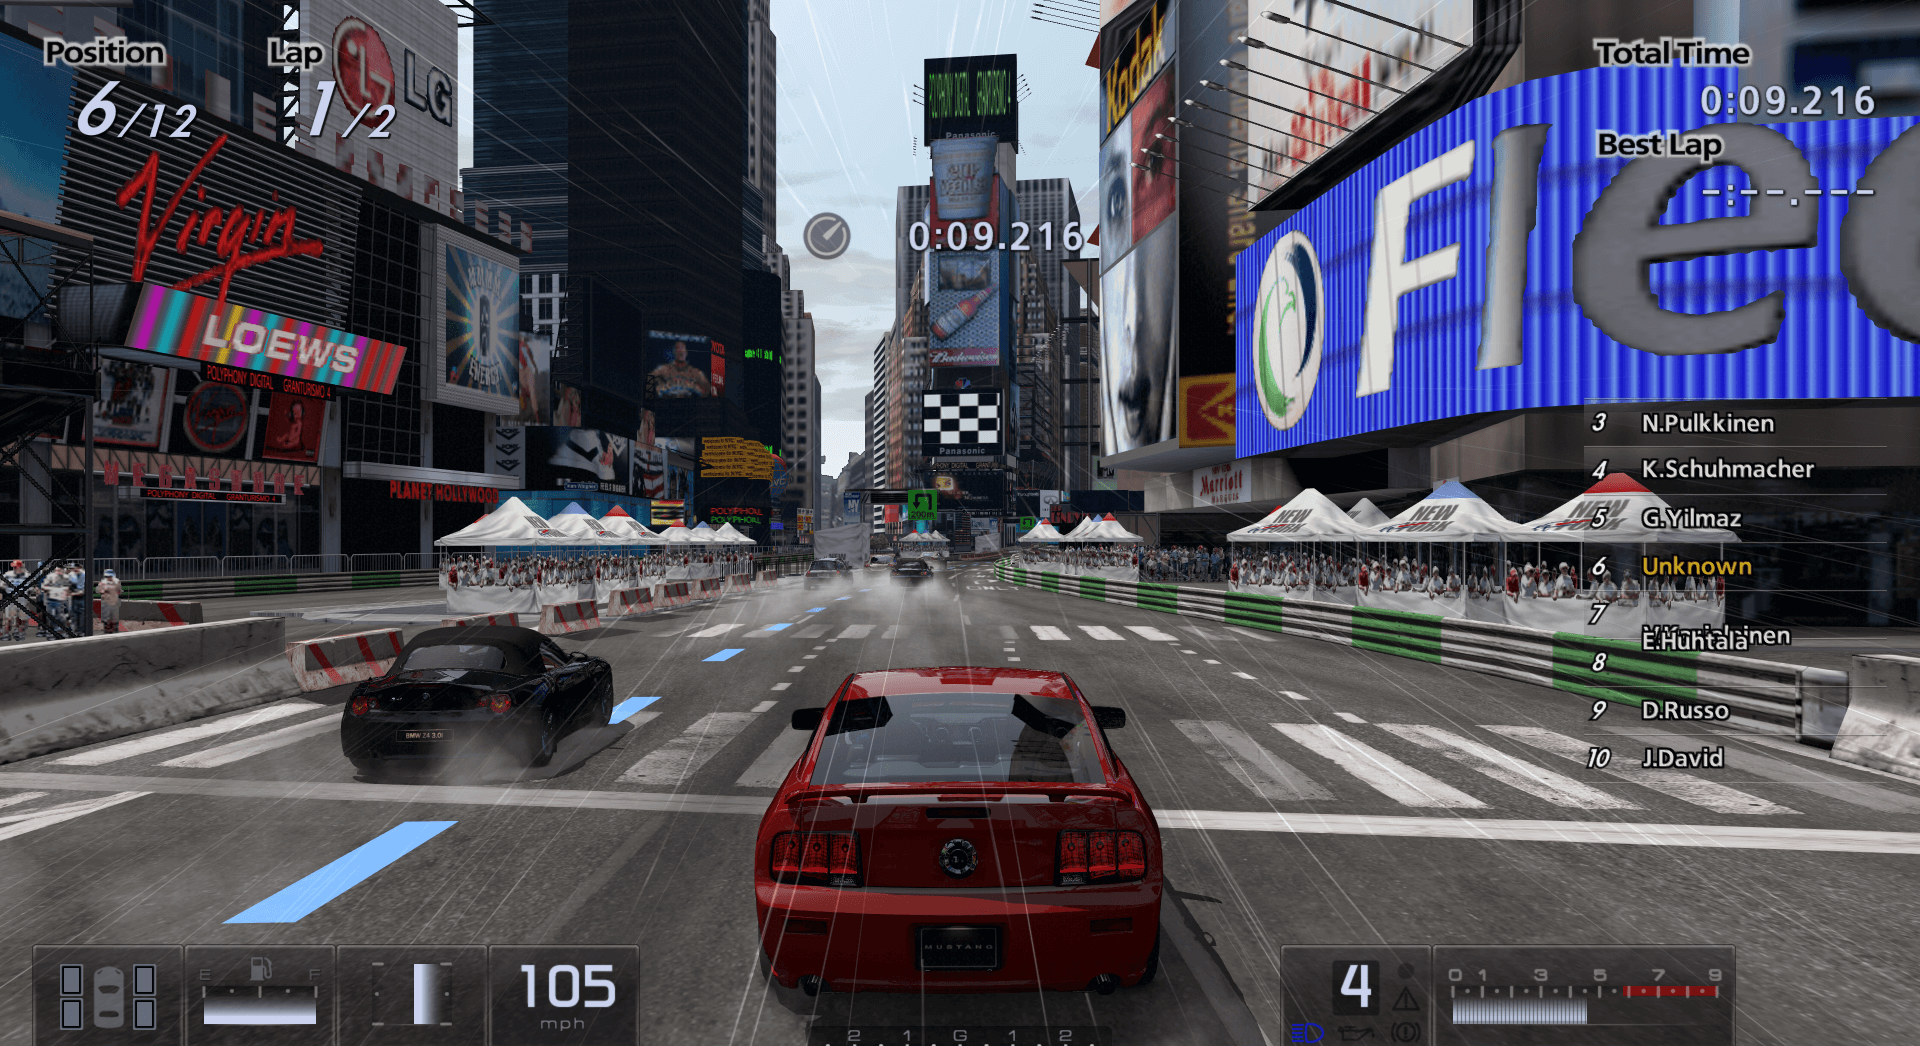 Grand Turismo 5 version for PC - GamesKnit